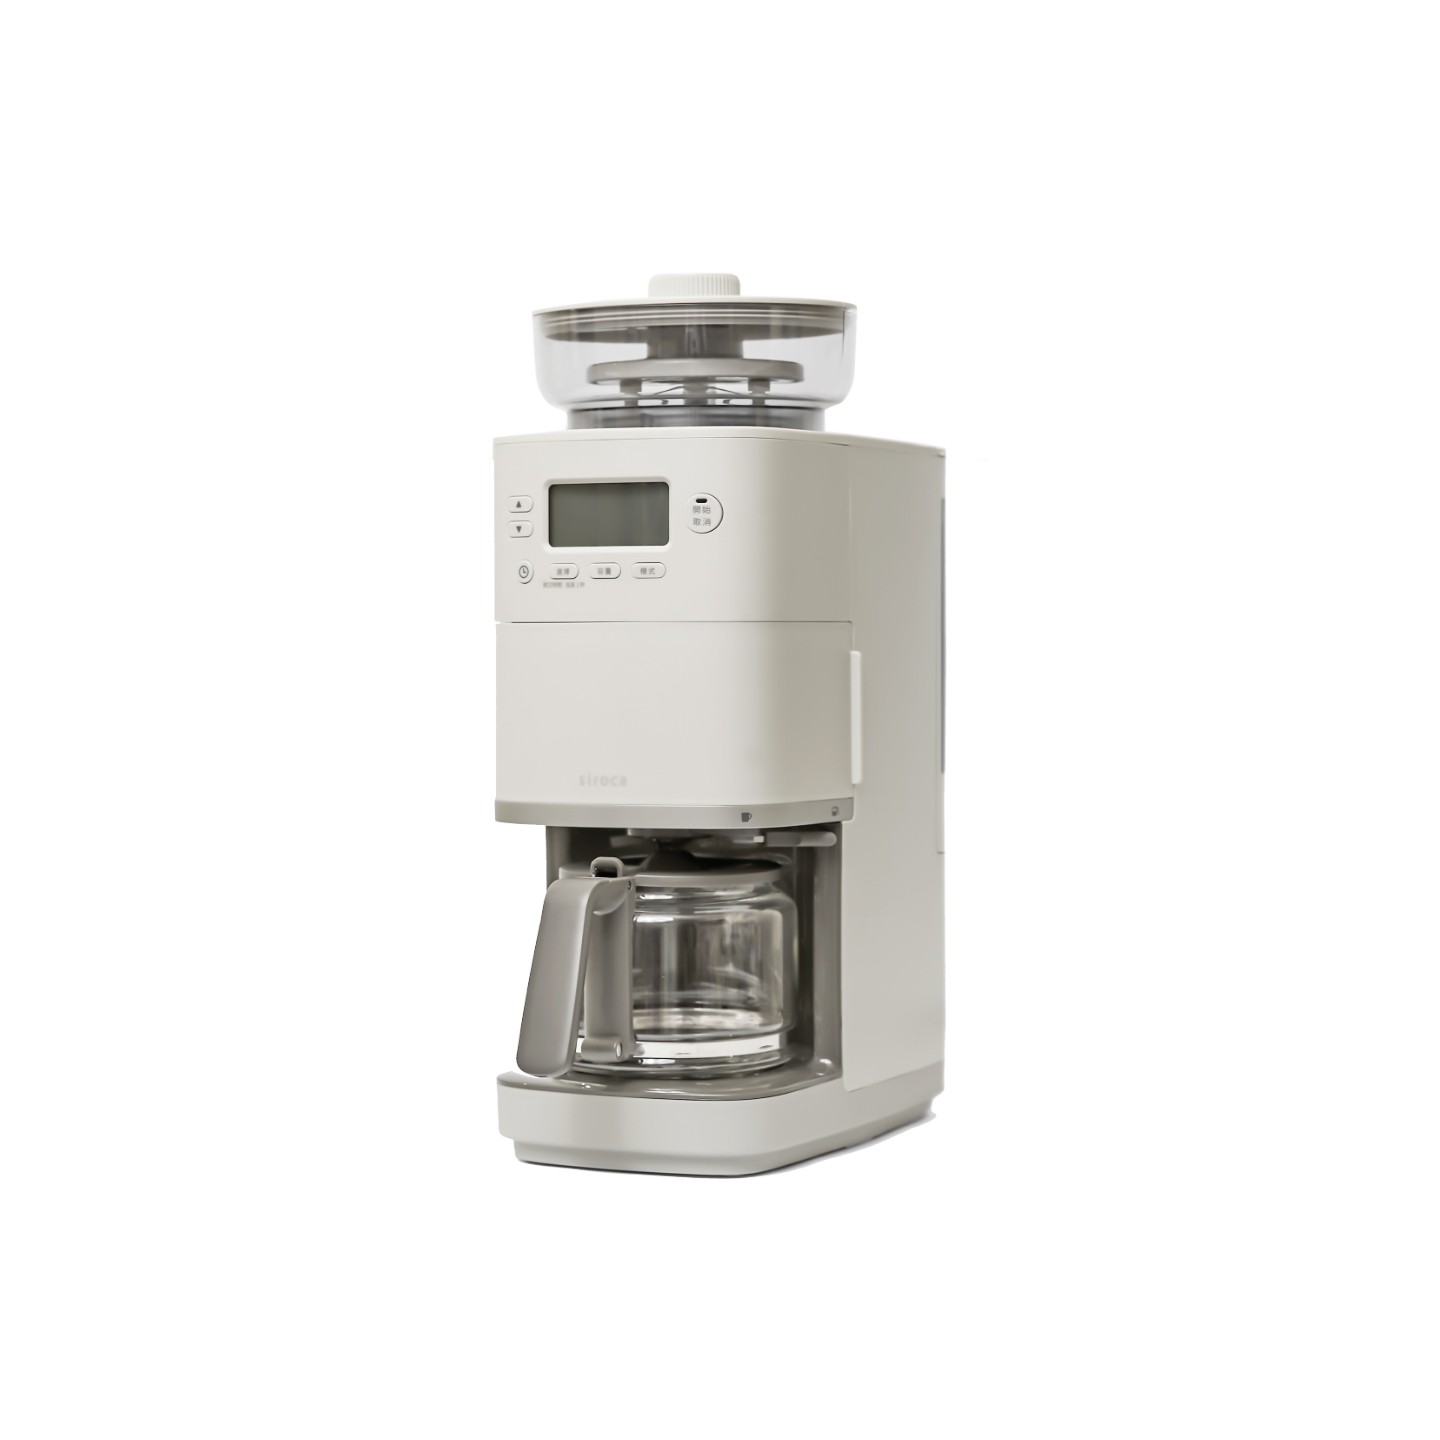 【新品上市加贈濾網】SC-C2510 全自動石臼式研磨咖啡機 淺灰色